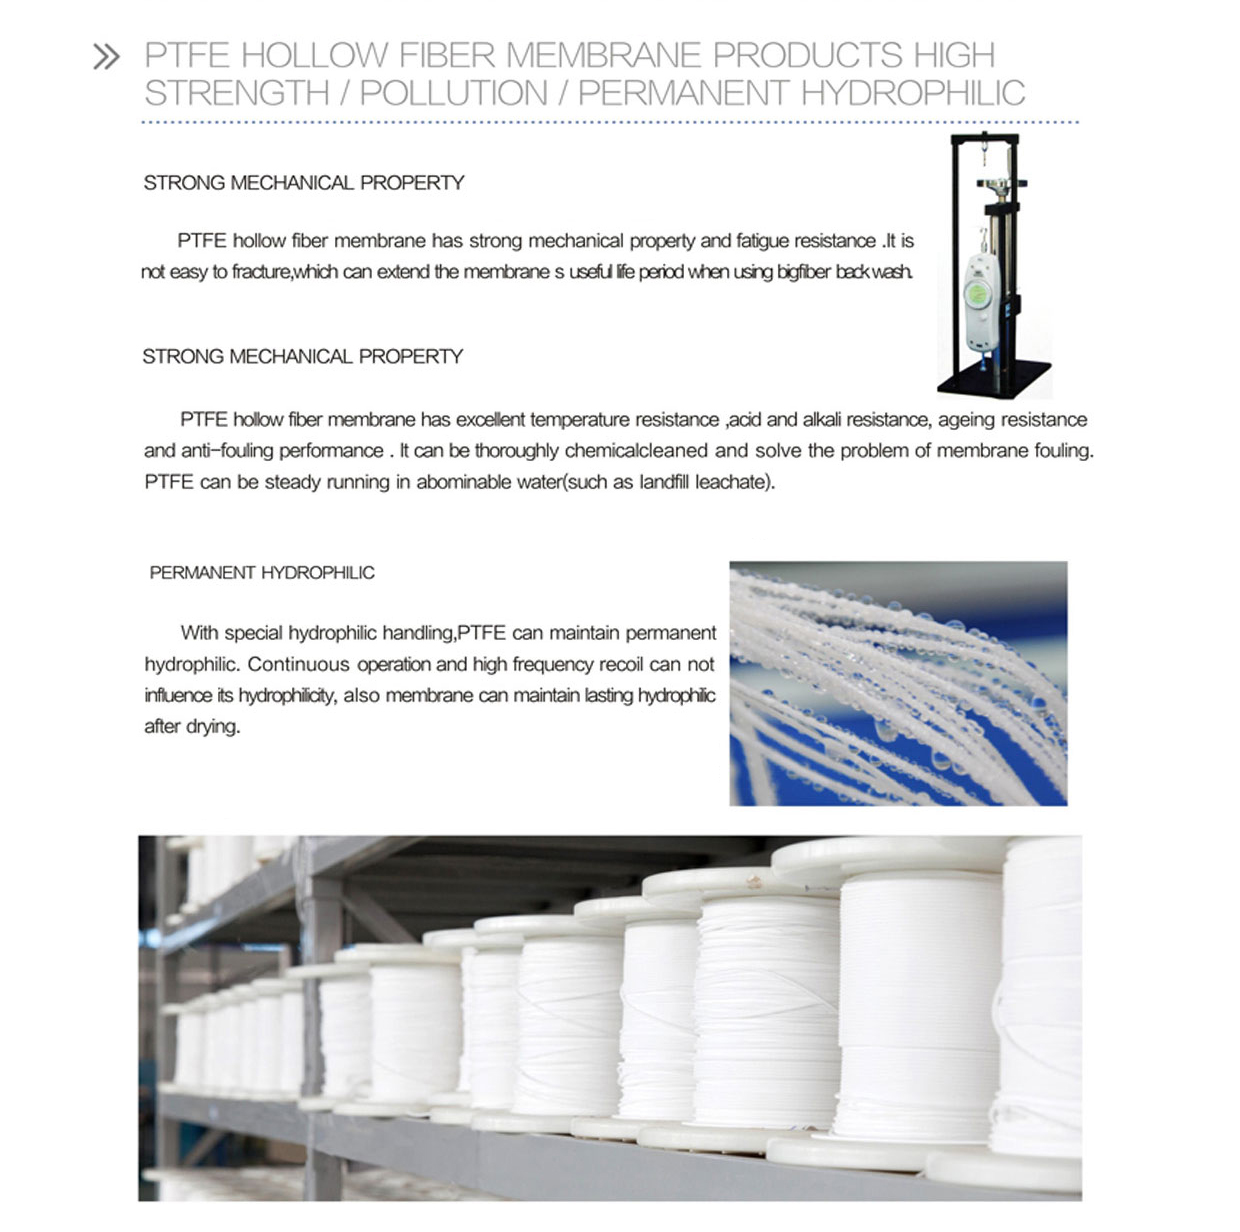 PTFE hollow fiber membrane